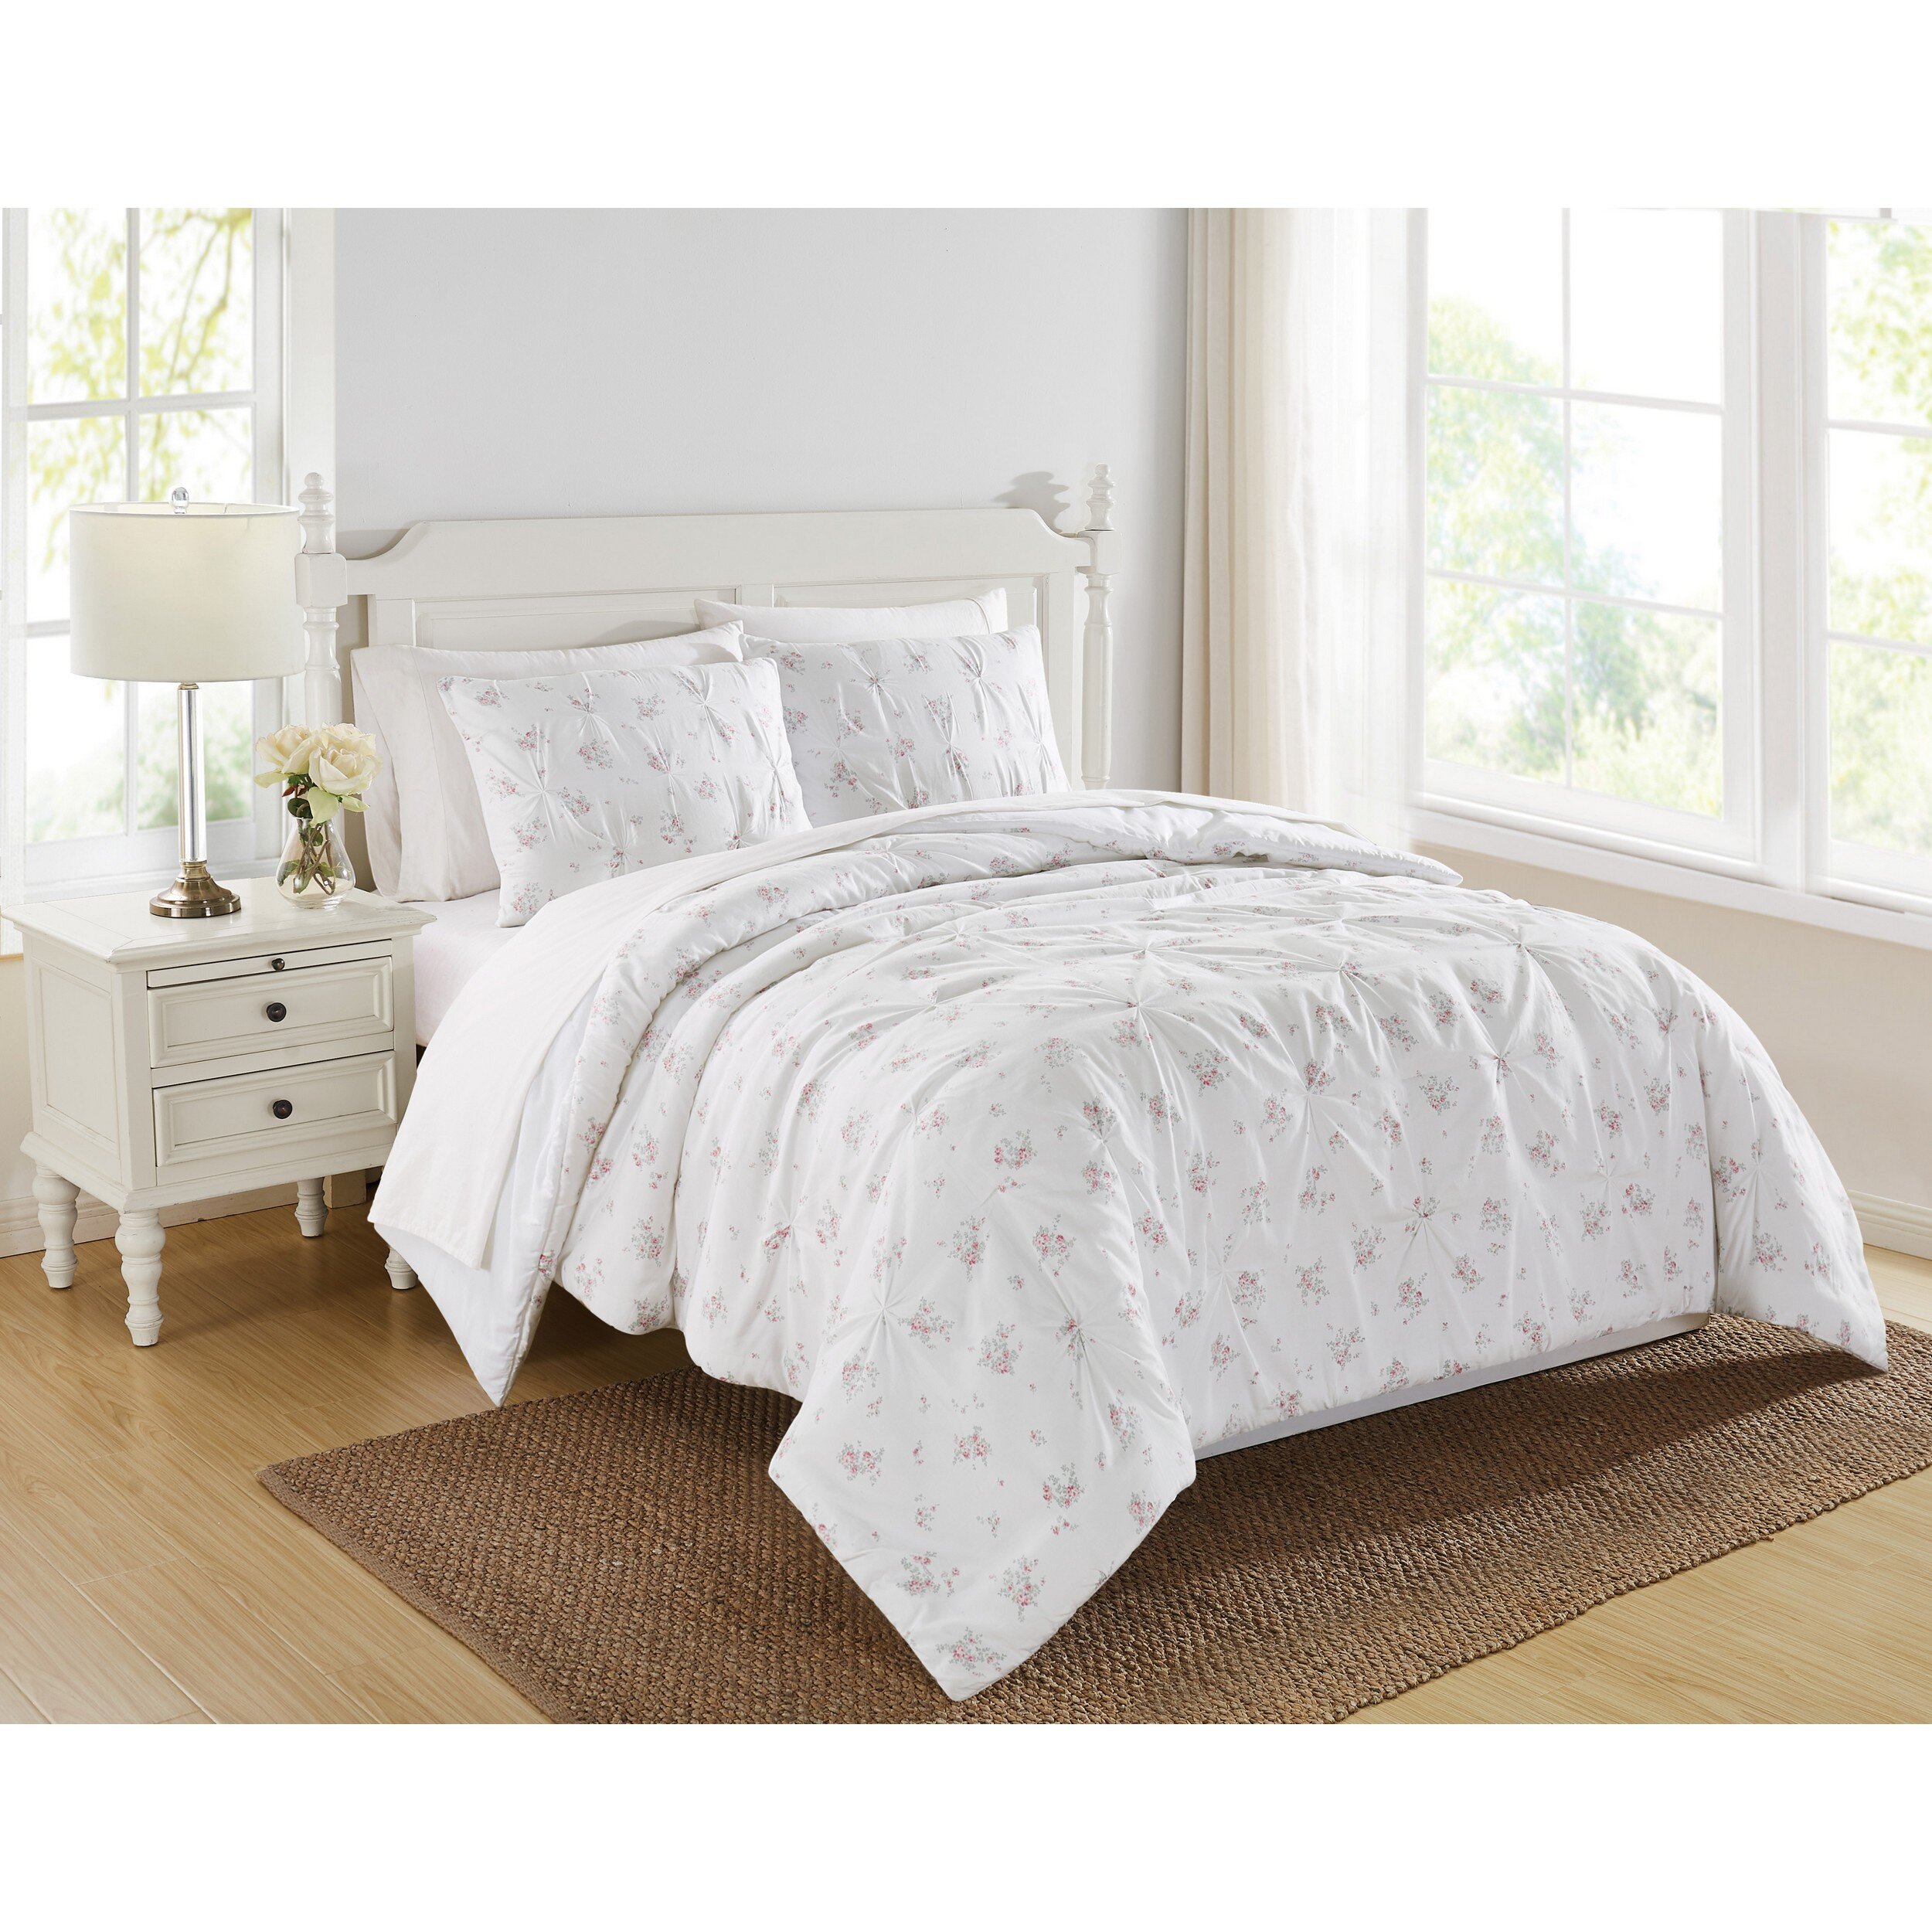 https://assets.wfcdn.com/im/28176241/compr-r85/1760/176078132/rosebury-cotton-floral-comforter-set.jpg